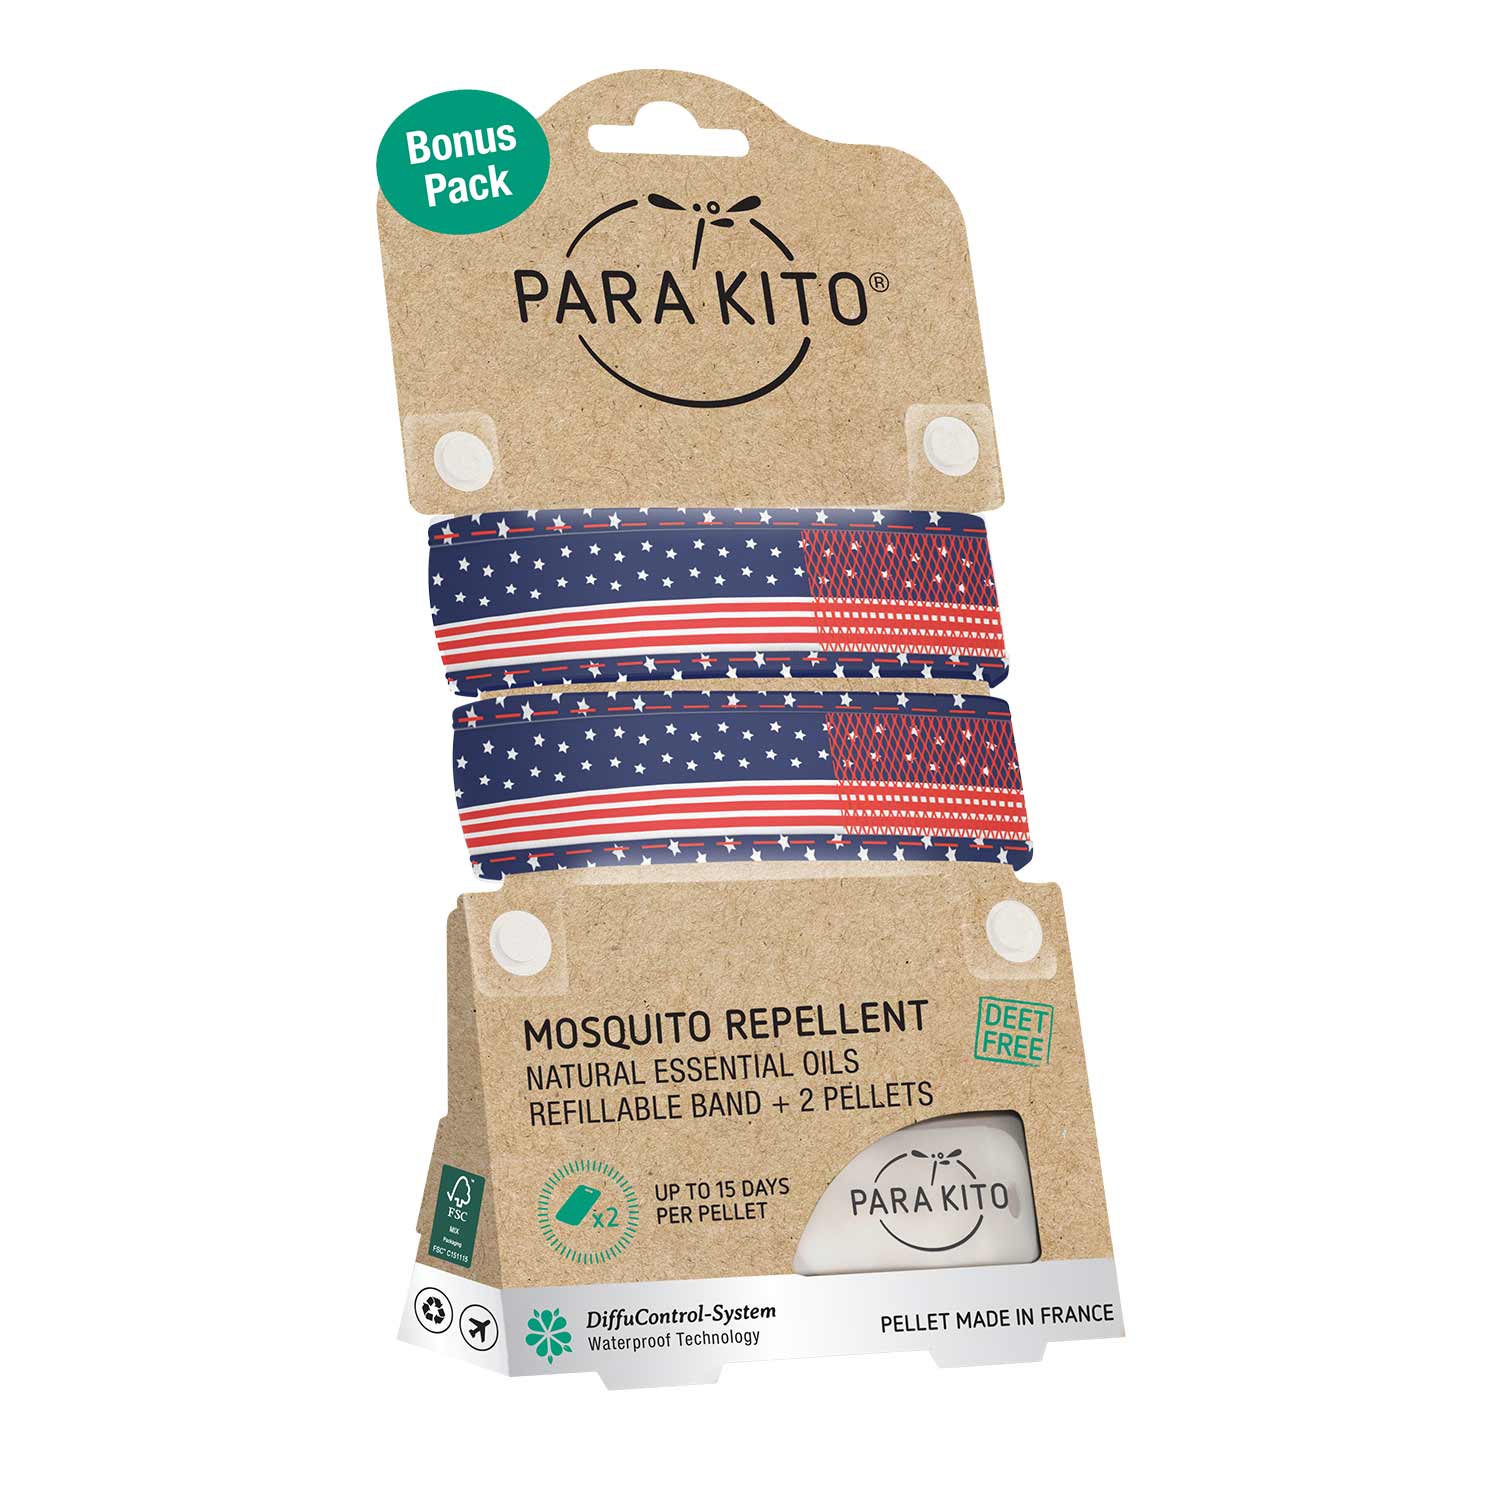 Mosquito Repellent Bonus Pack - 2 US Flag Wristbands